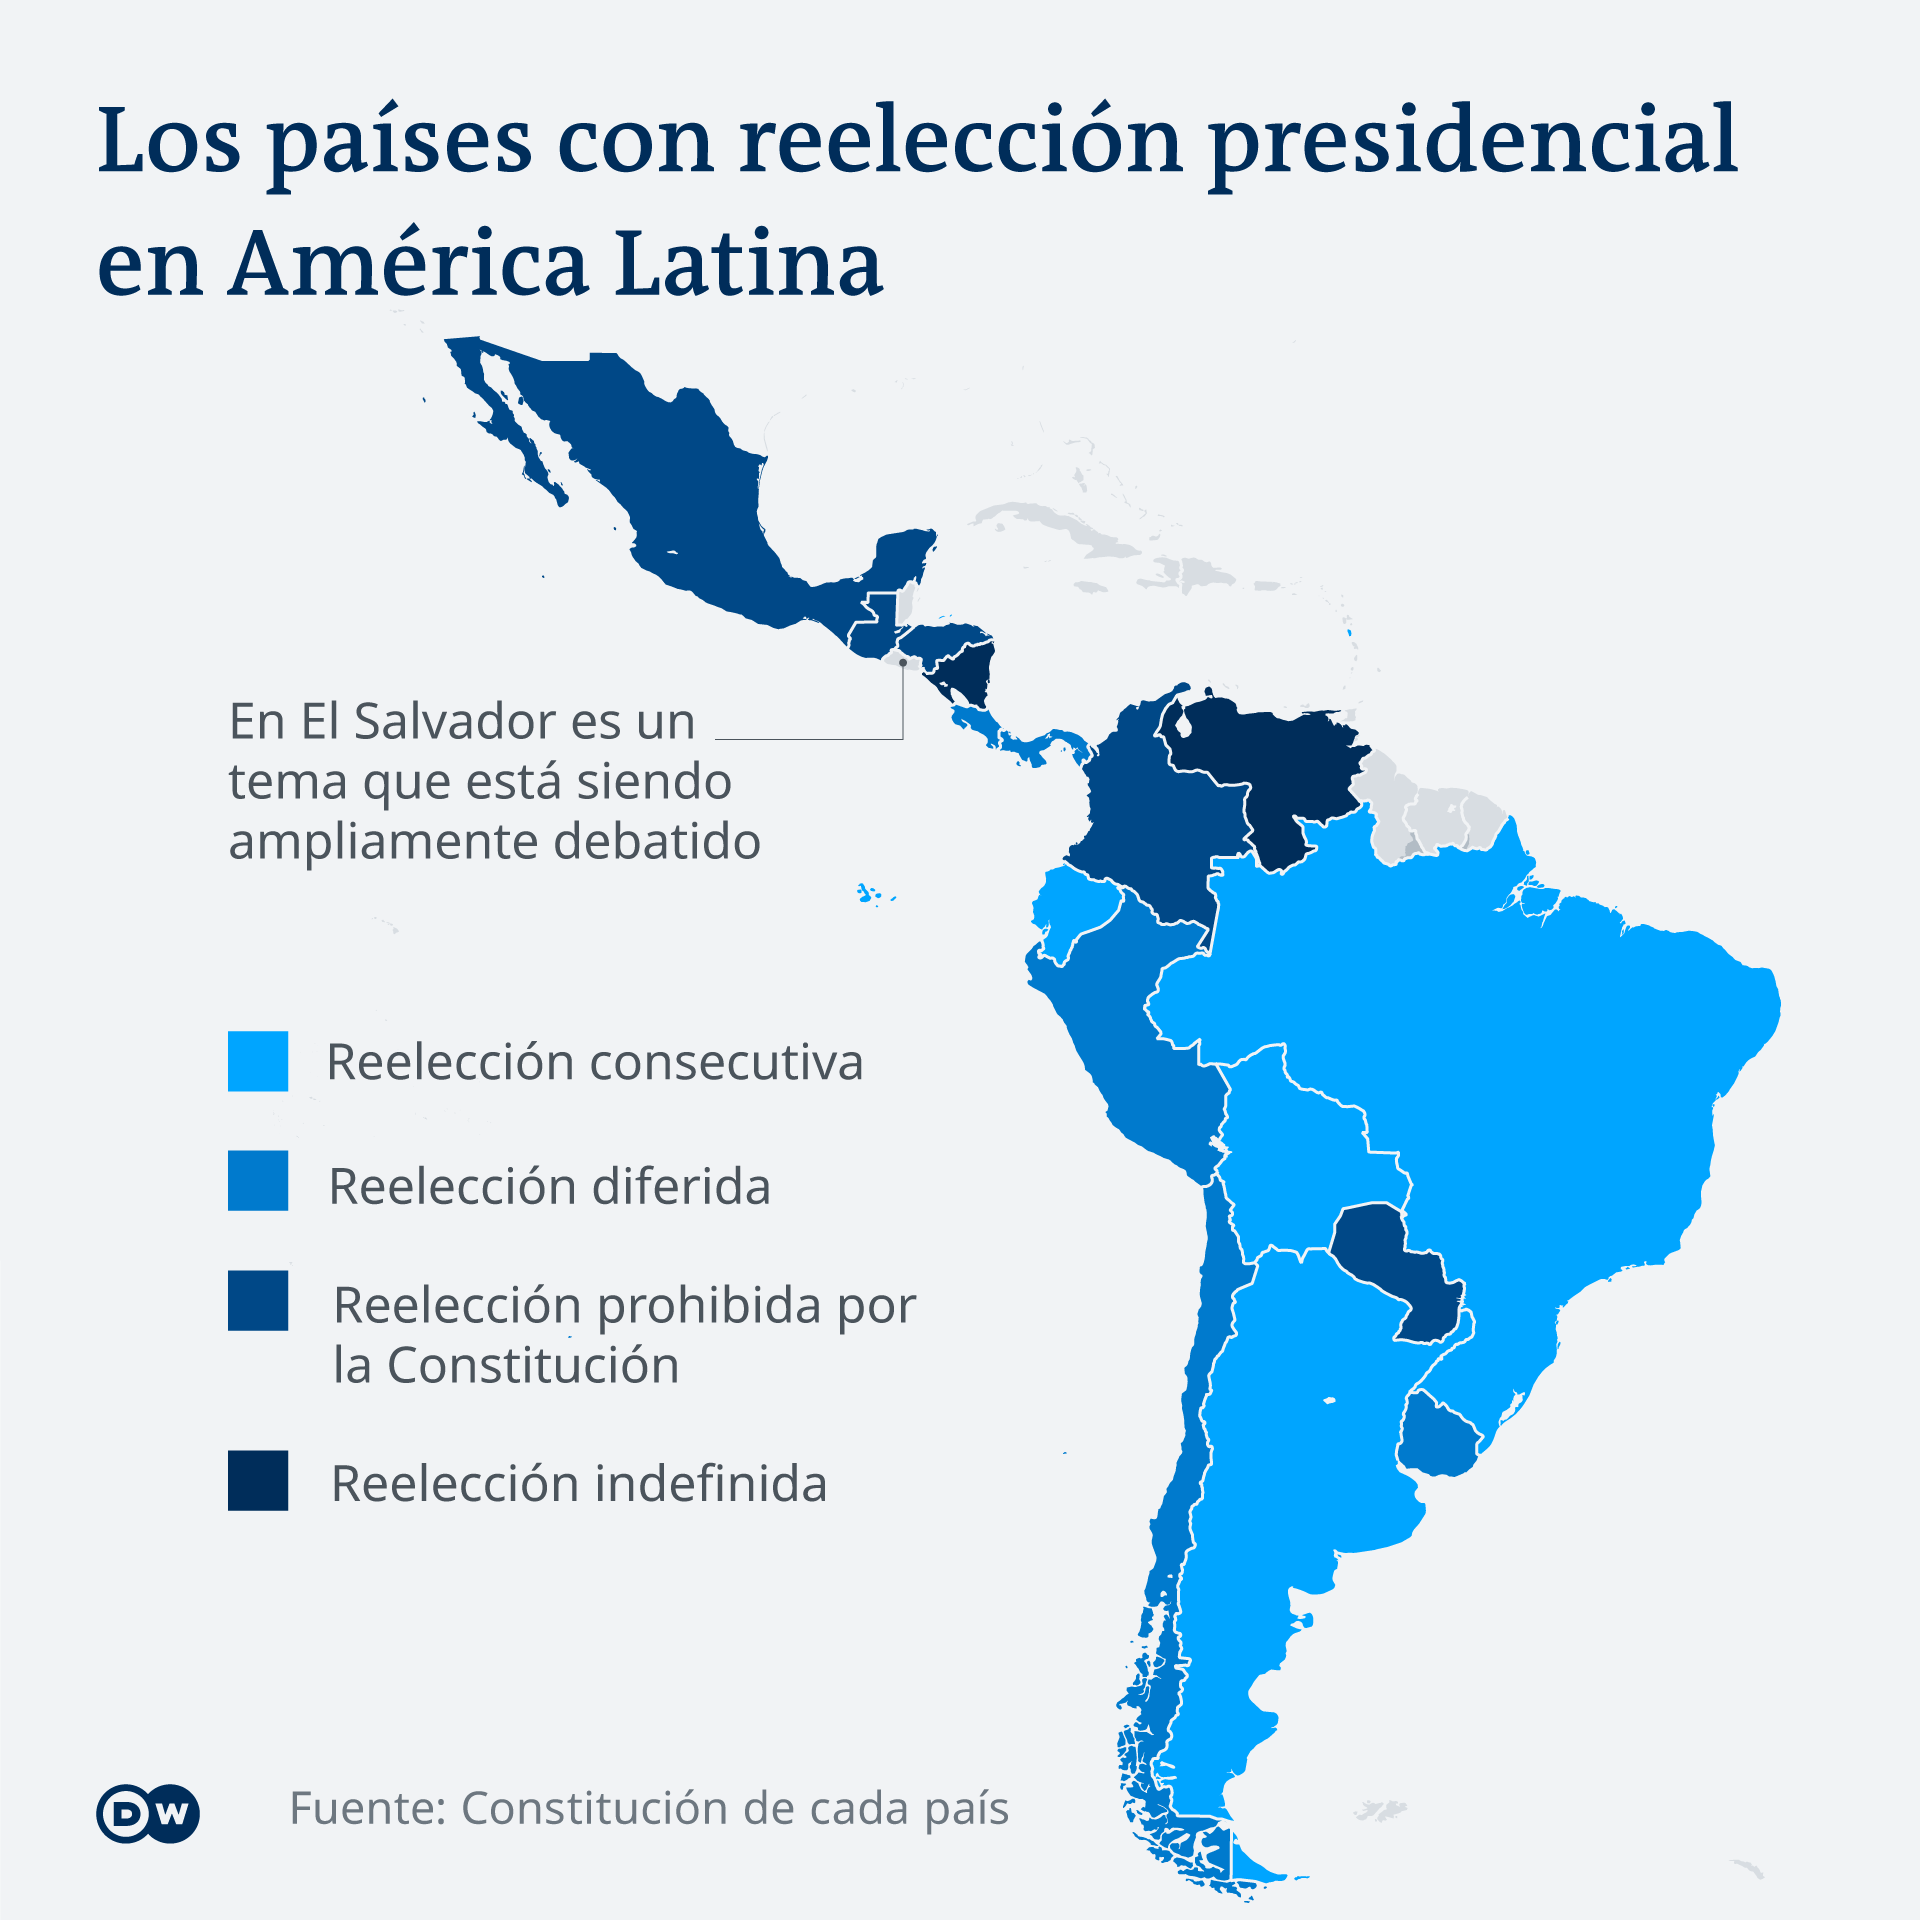 Mapa de América Latina con los países donde se permite la reelección presidencial